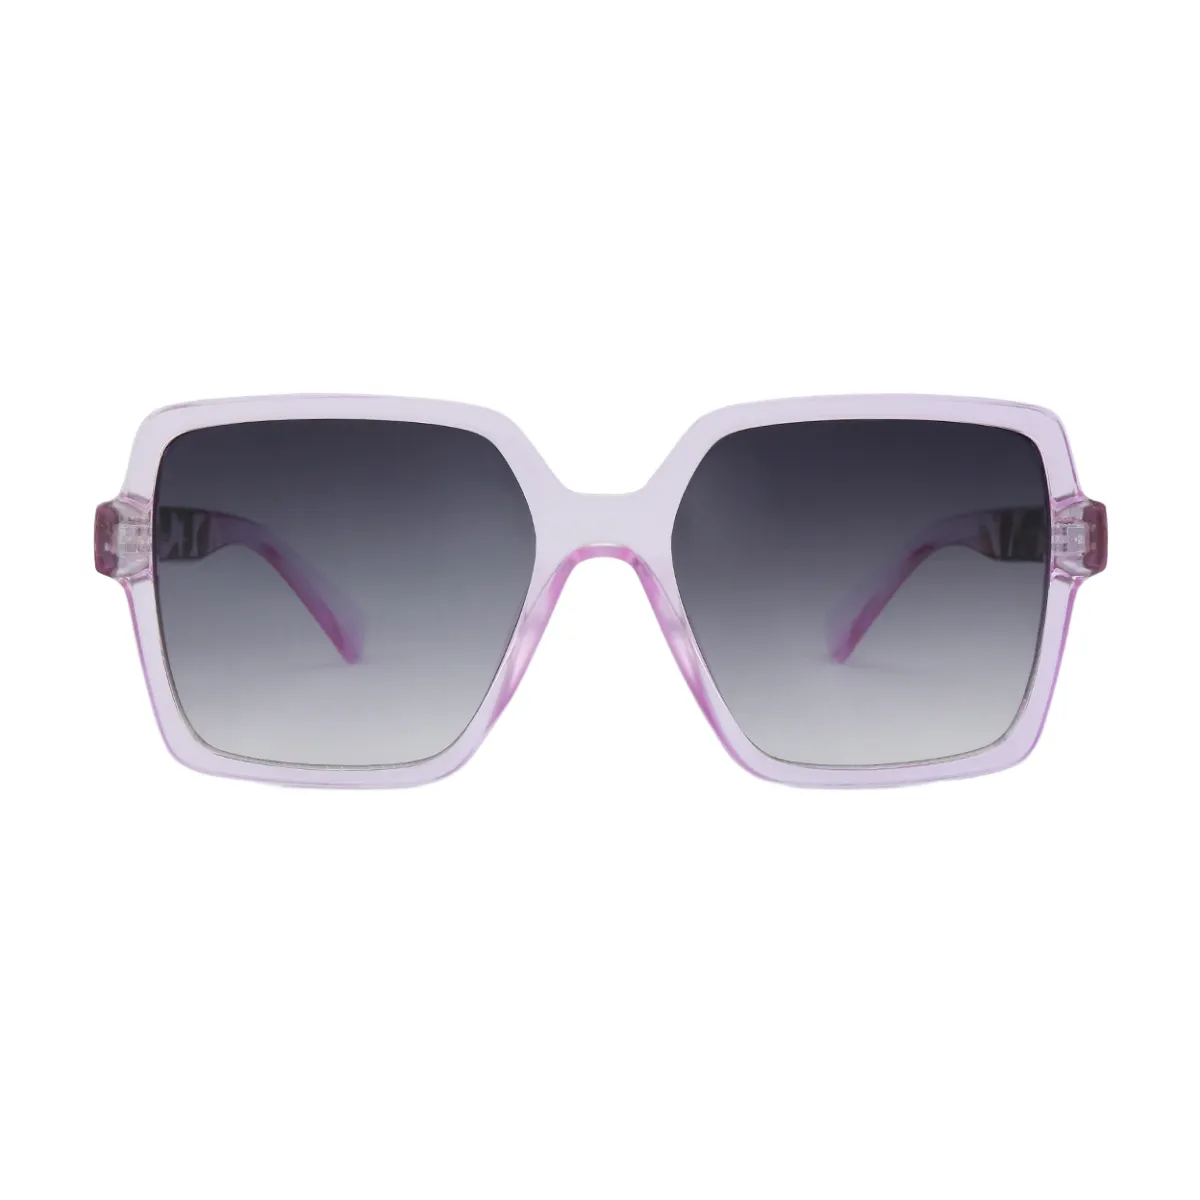 Sadie - Square Transparent-Purple Sunglasses for Women